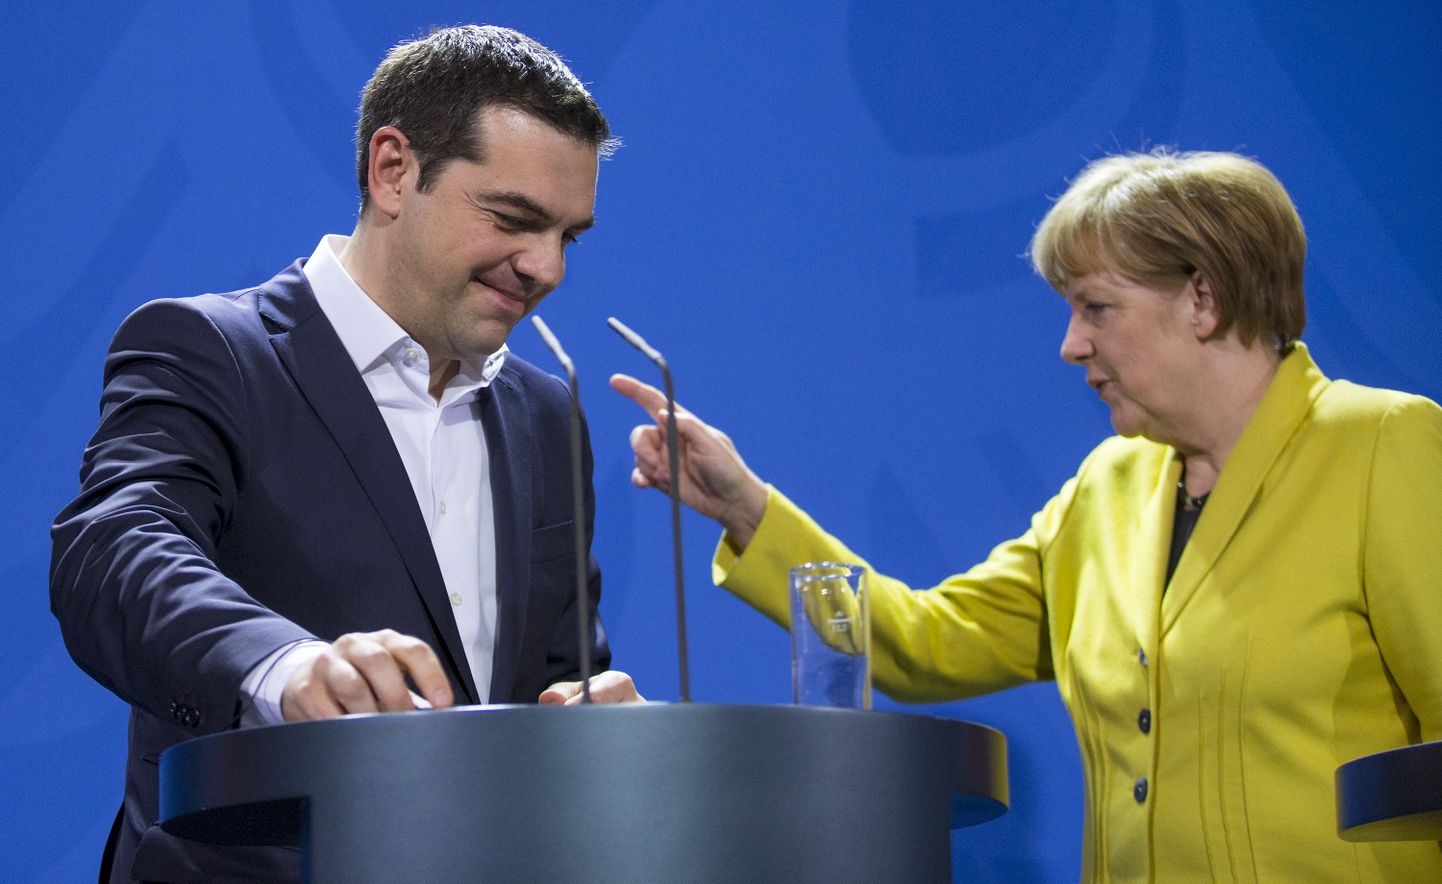 Kreeka peaminister Alexis Tsipras ja Saksamaa kantsler Angela Merkel